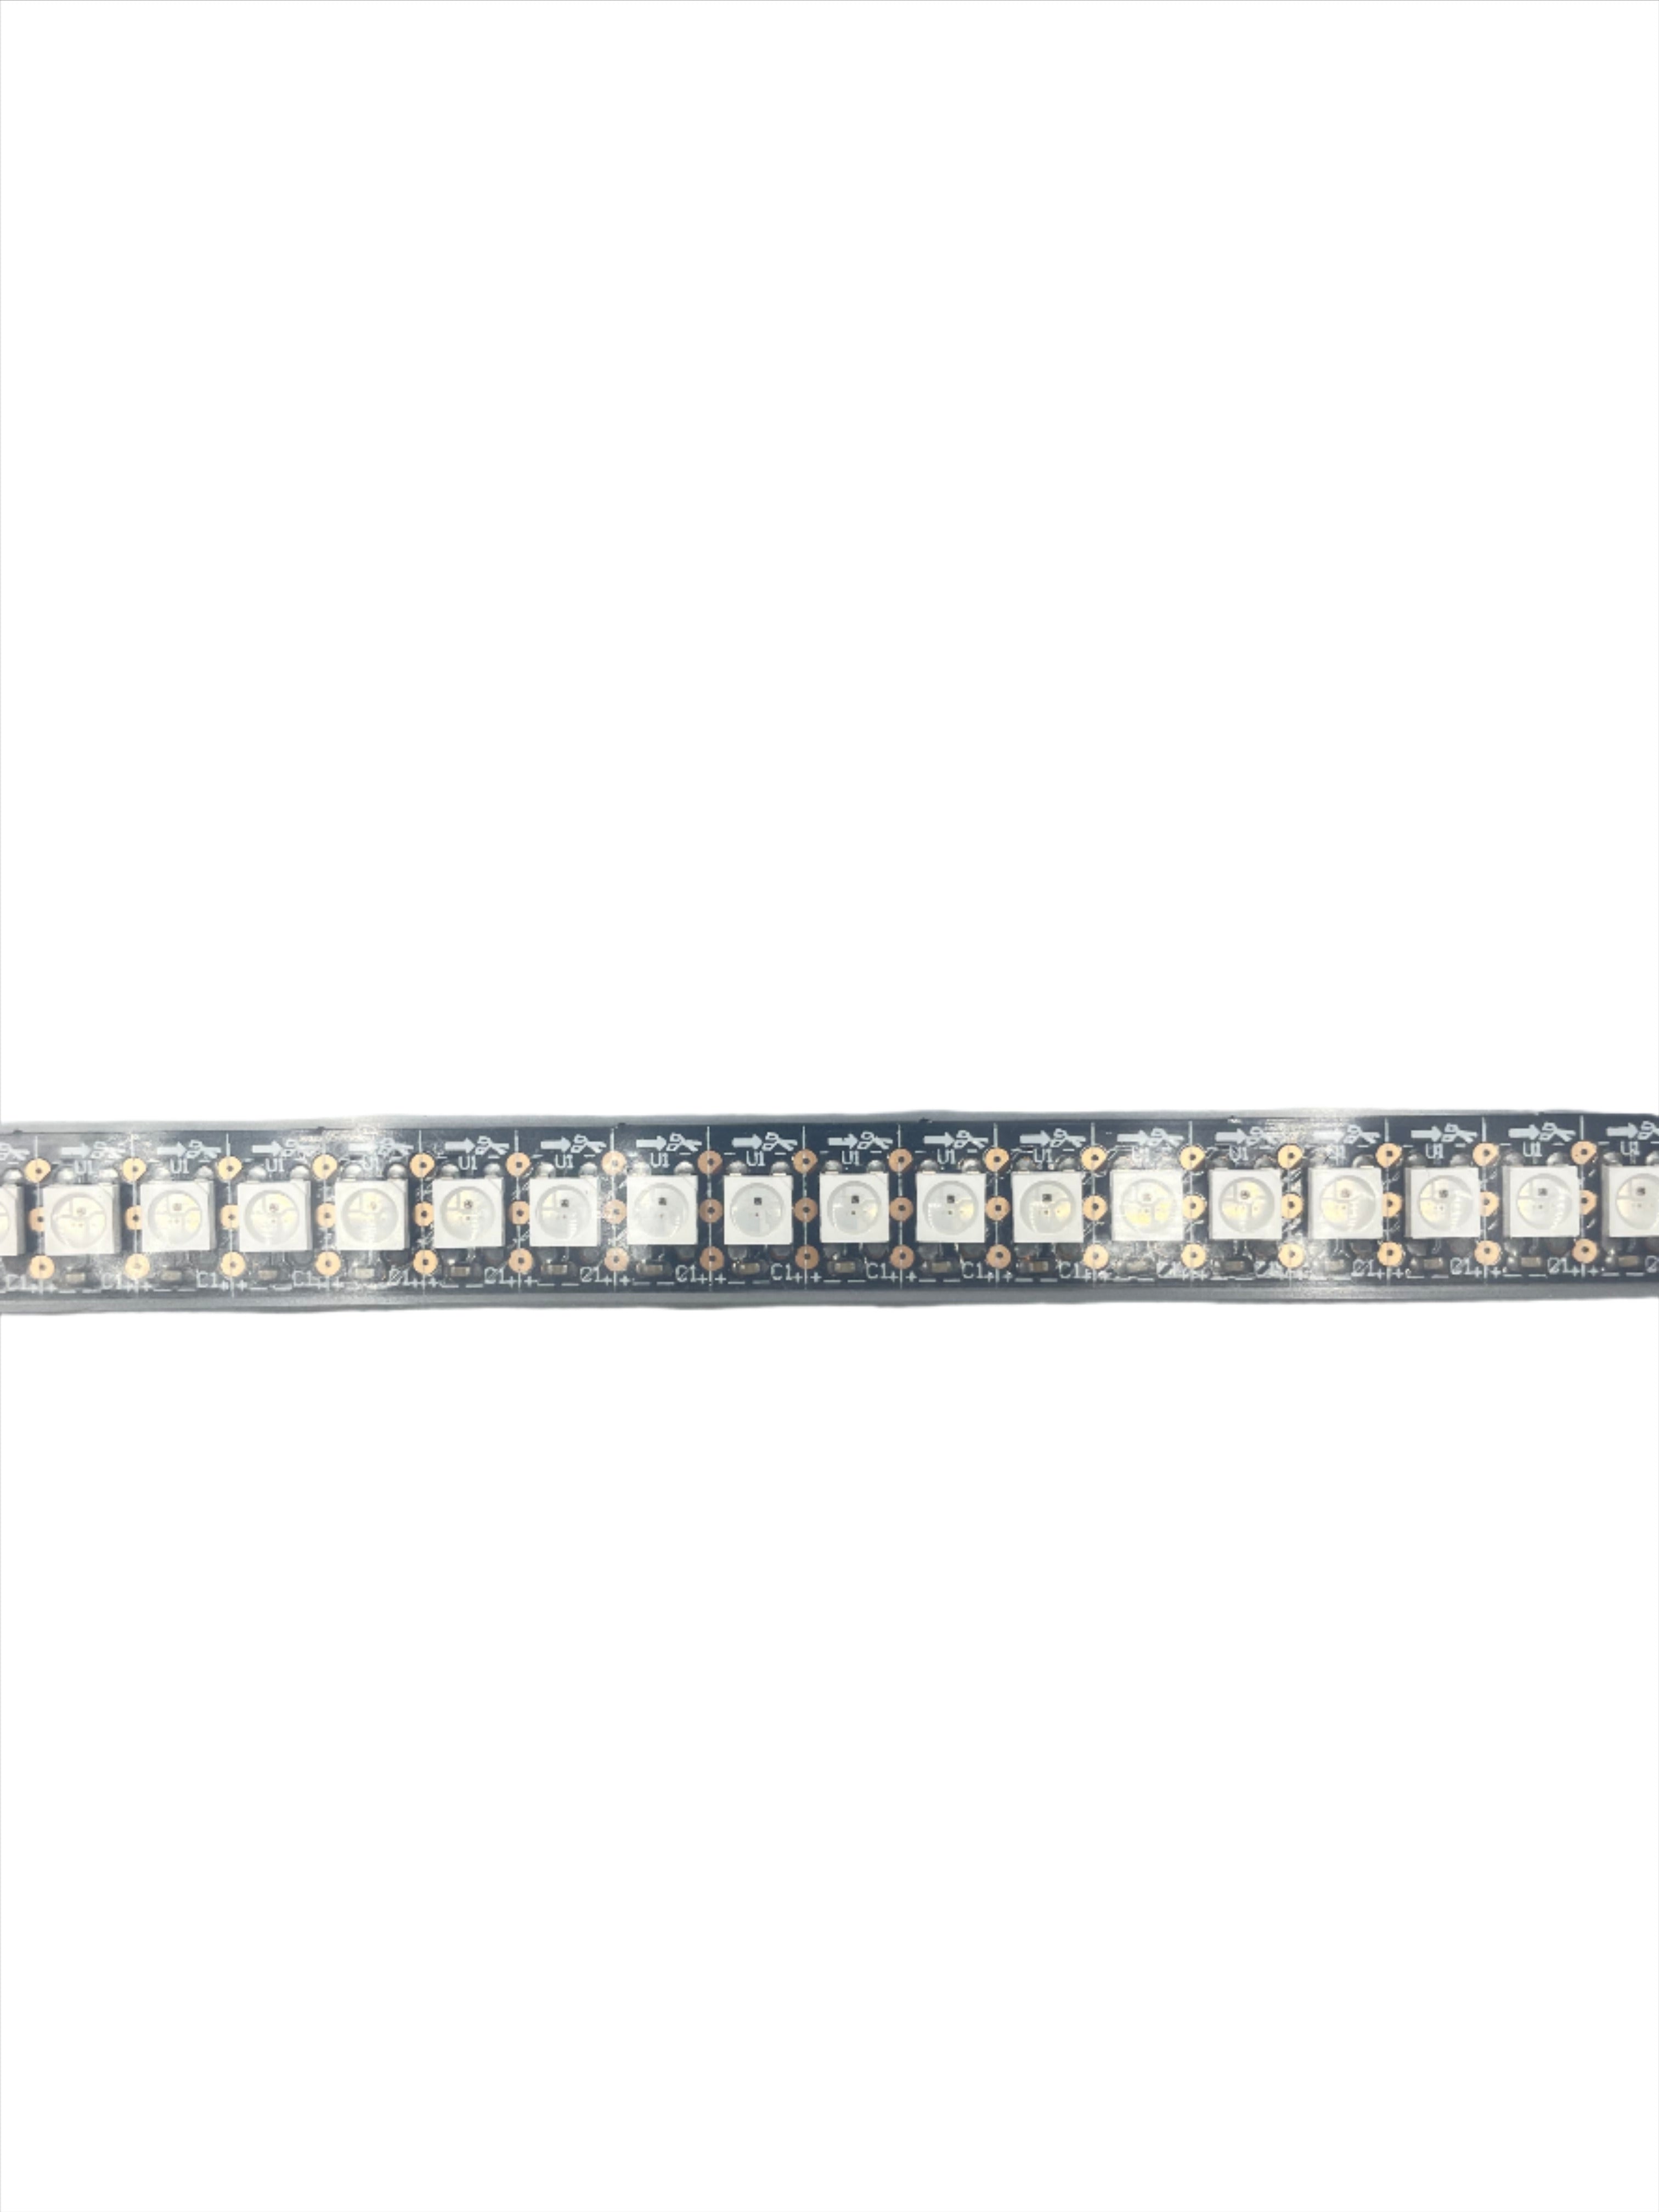 SK6812-B RGB LED-Streifen, 144 LEDs pro Meter, 5 Meter, Schwarze PCB